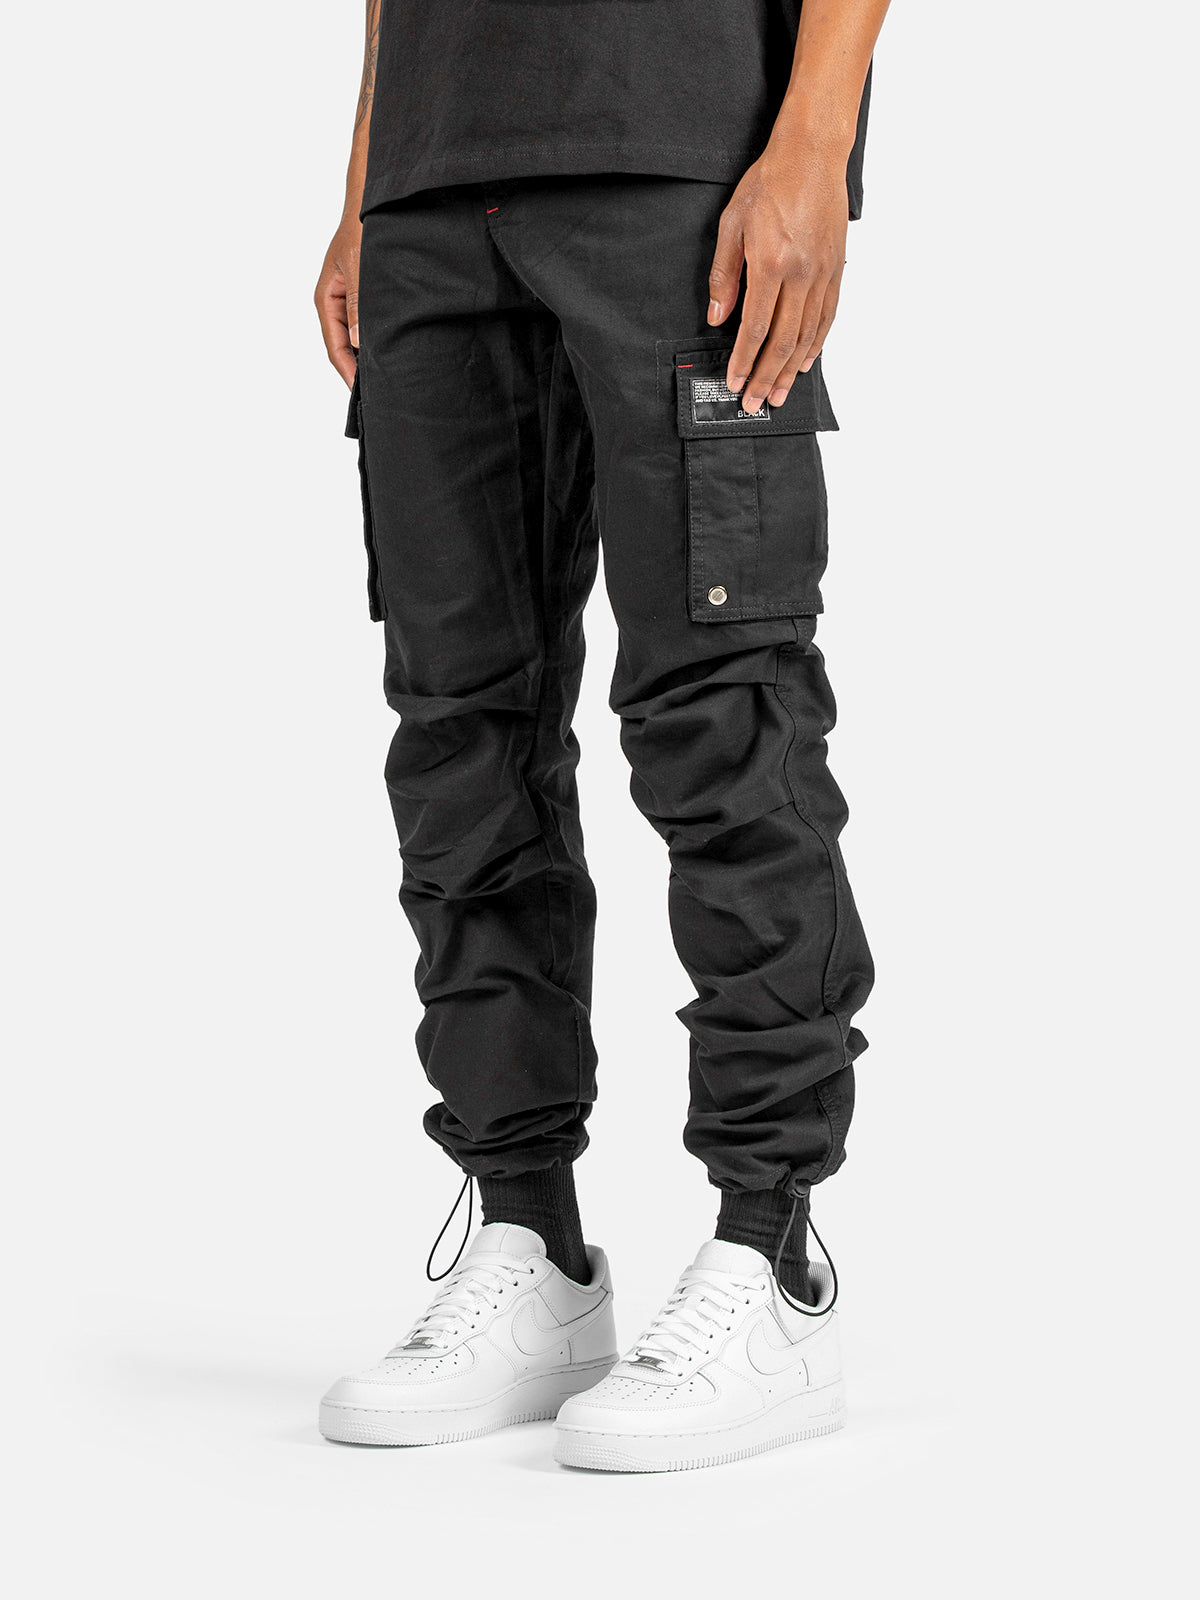 C9 Cargo Pants - Black | Blacktailor